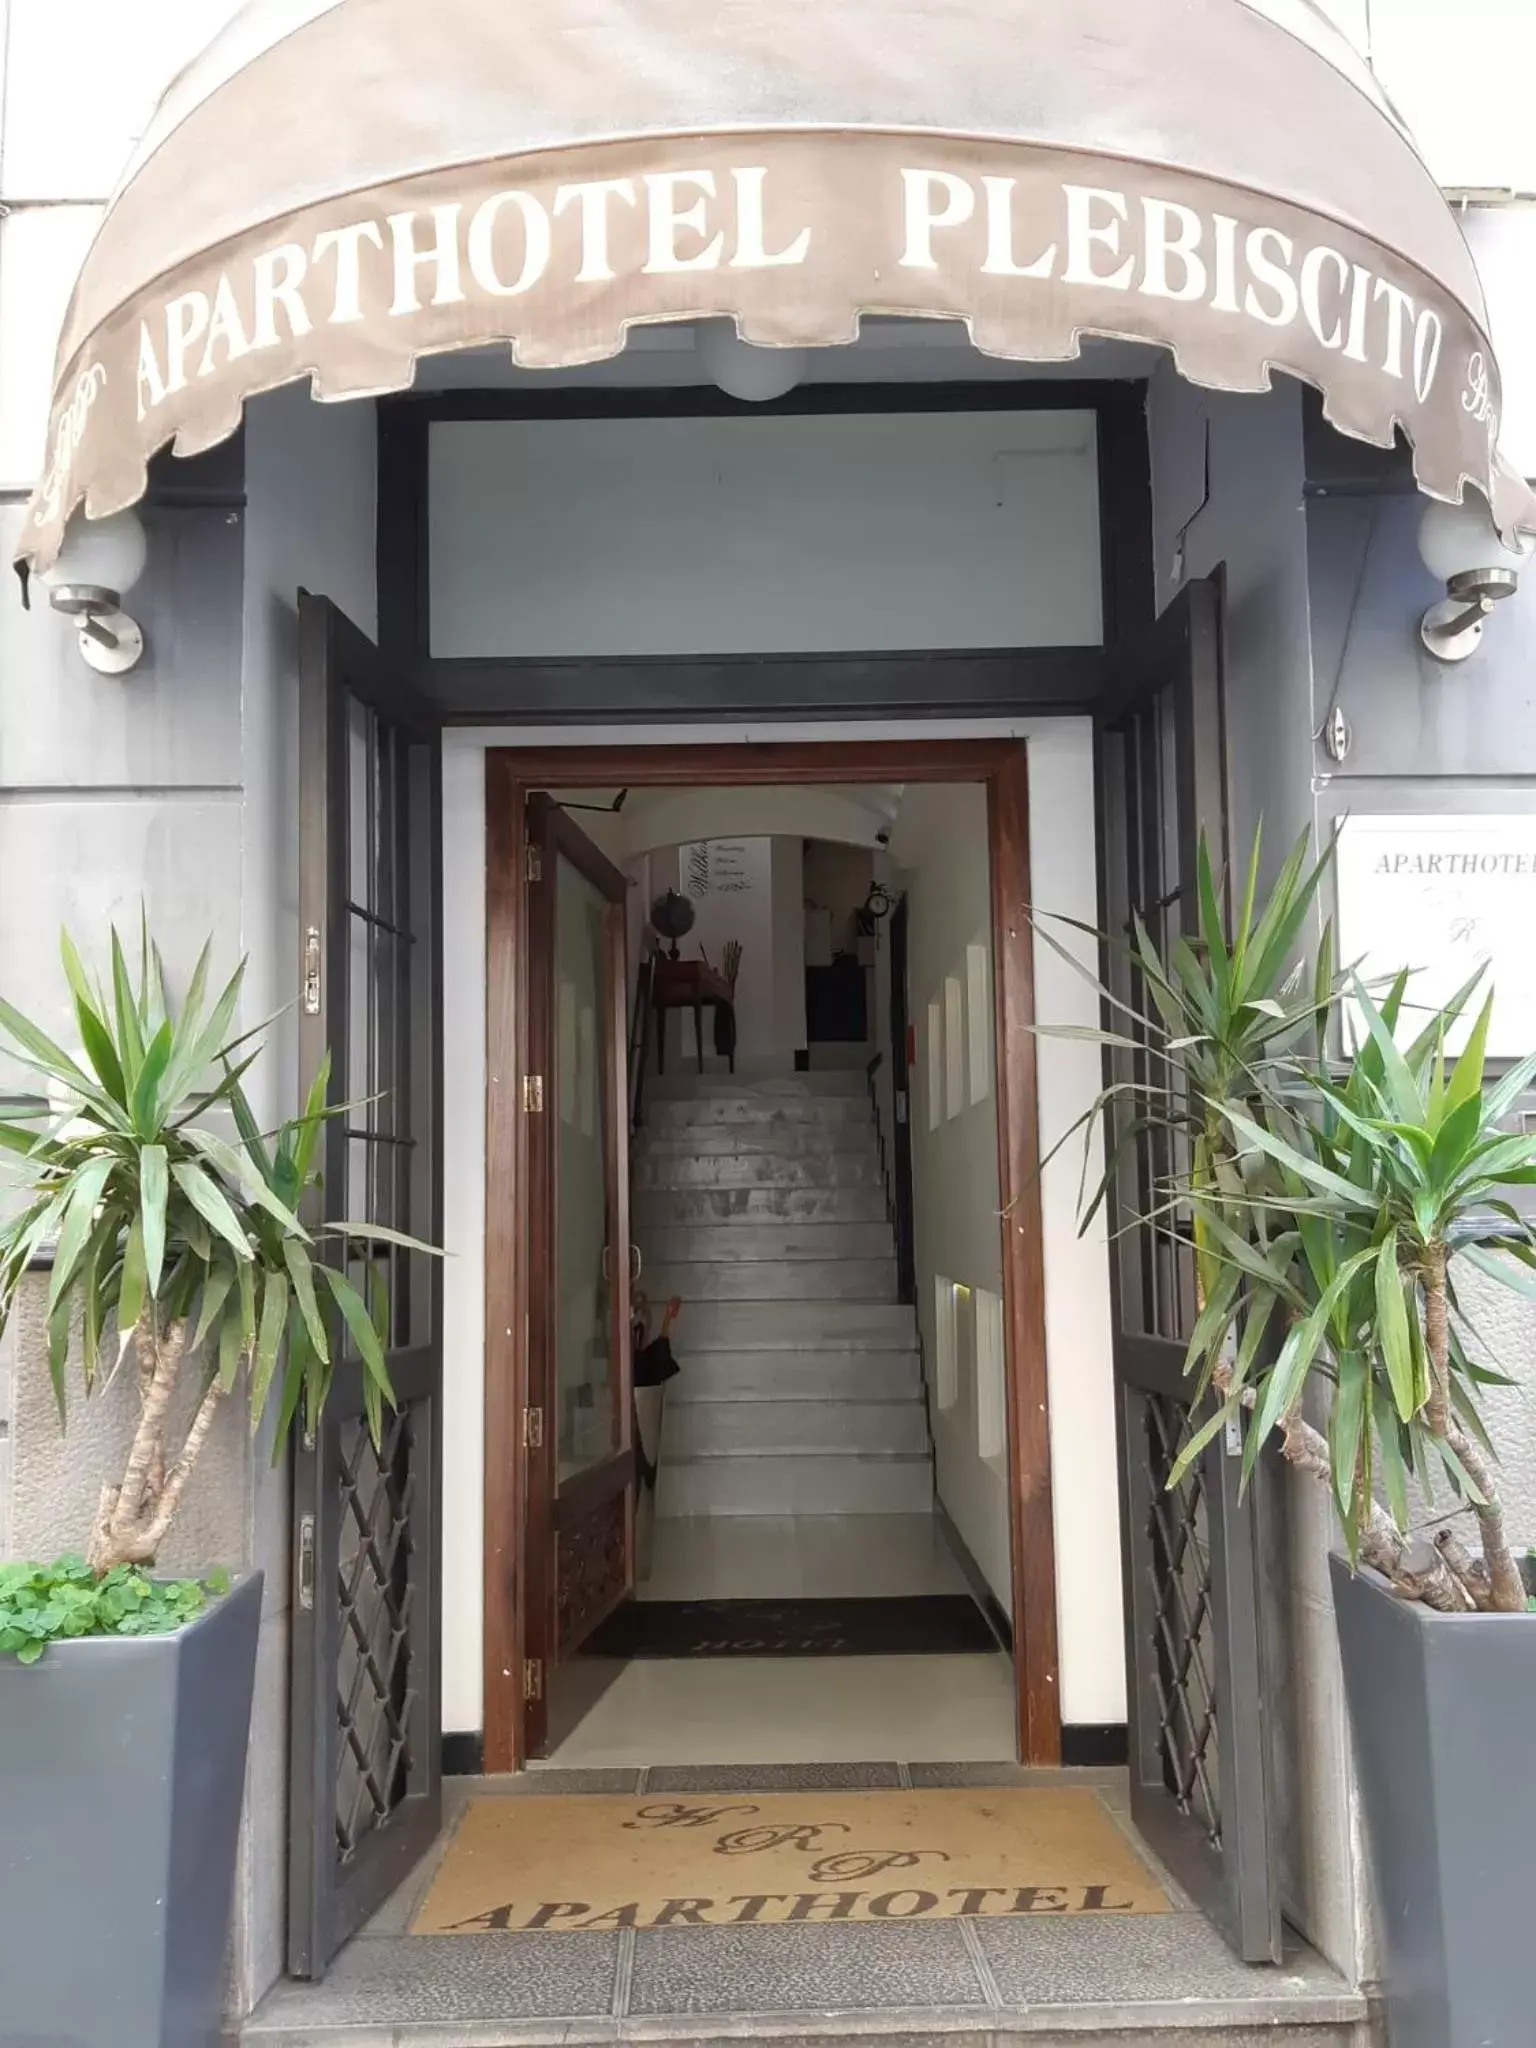 Facade/entrance in Hotel Plebiscito Aparthotel